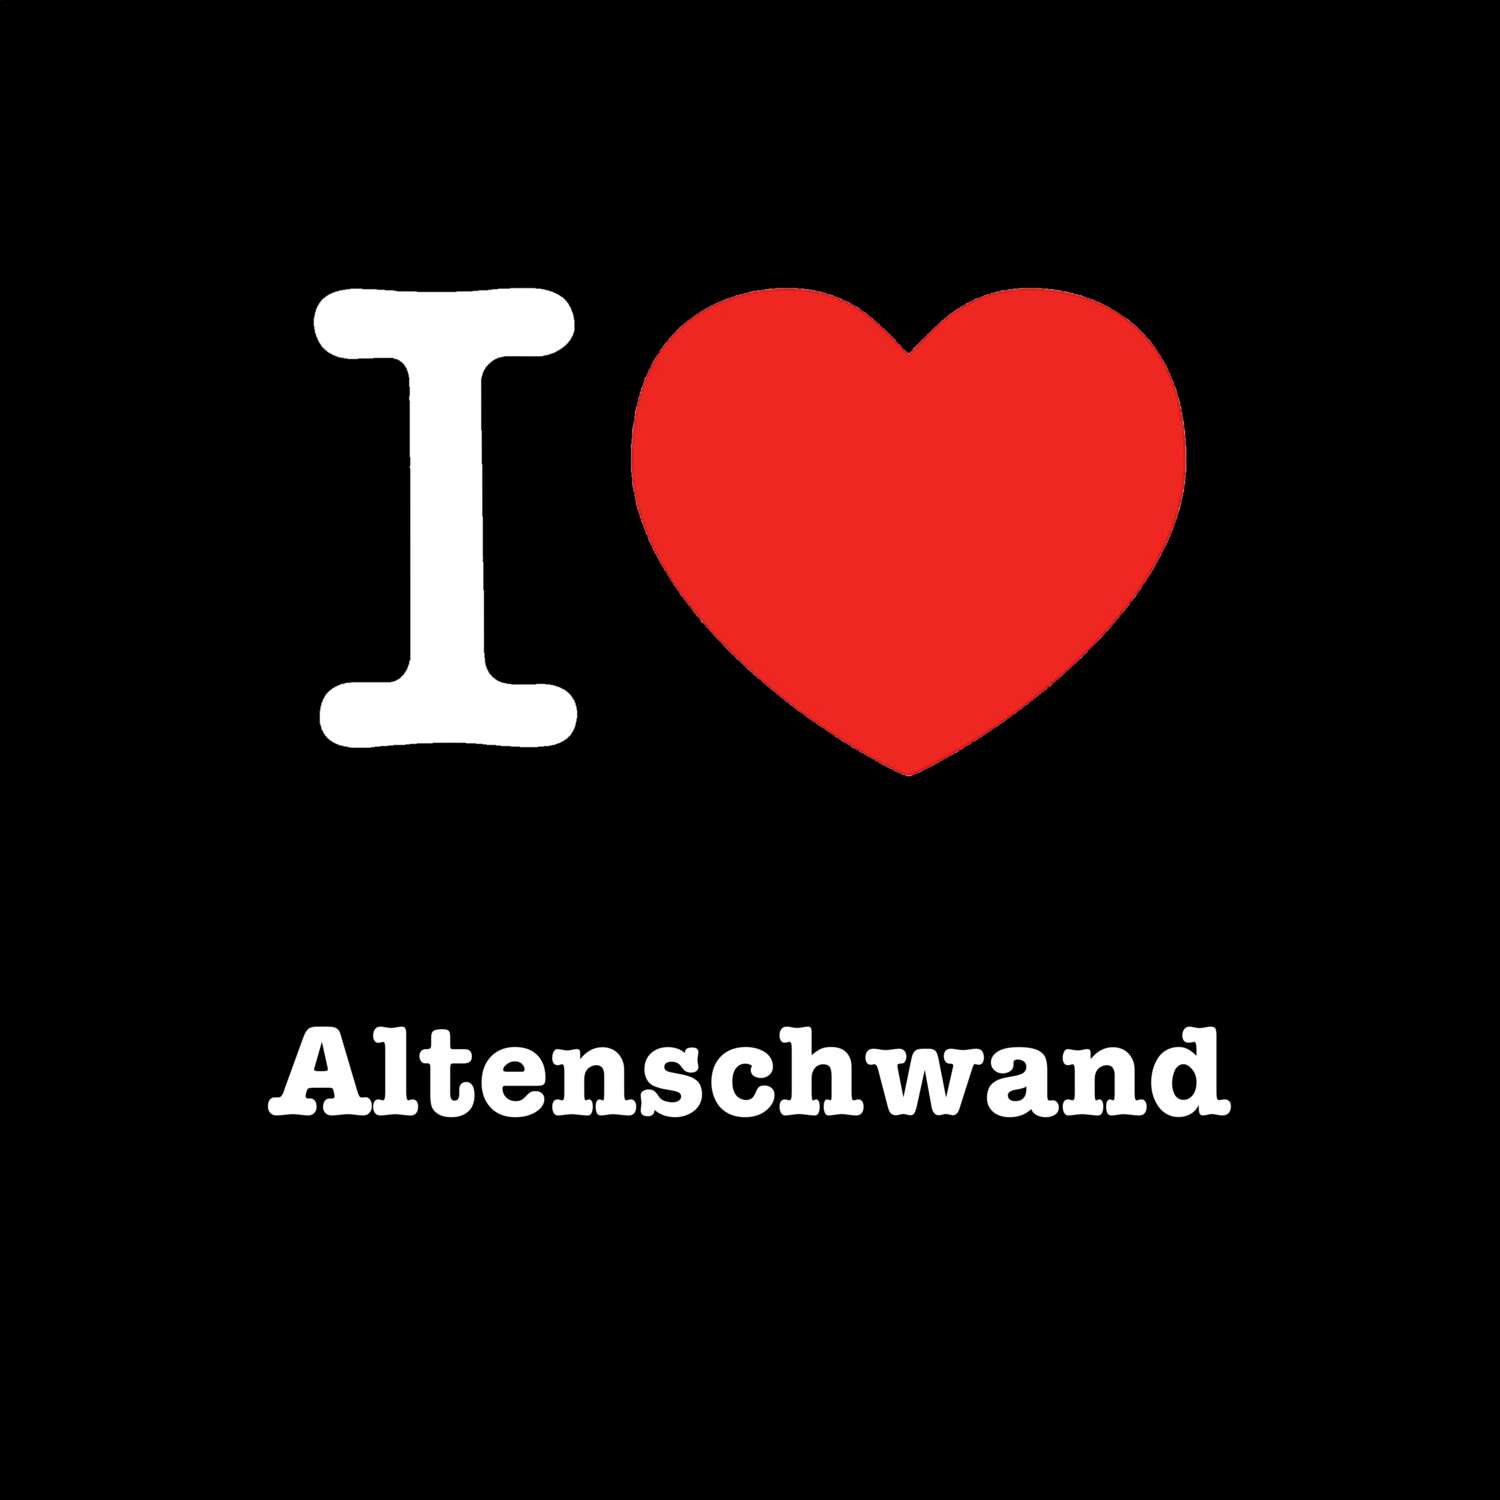 Altenschwand T-Shirt »I love«